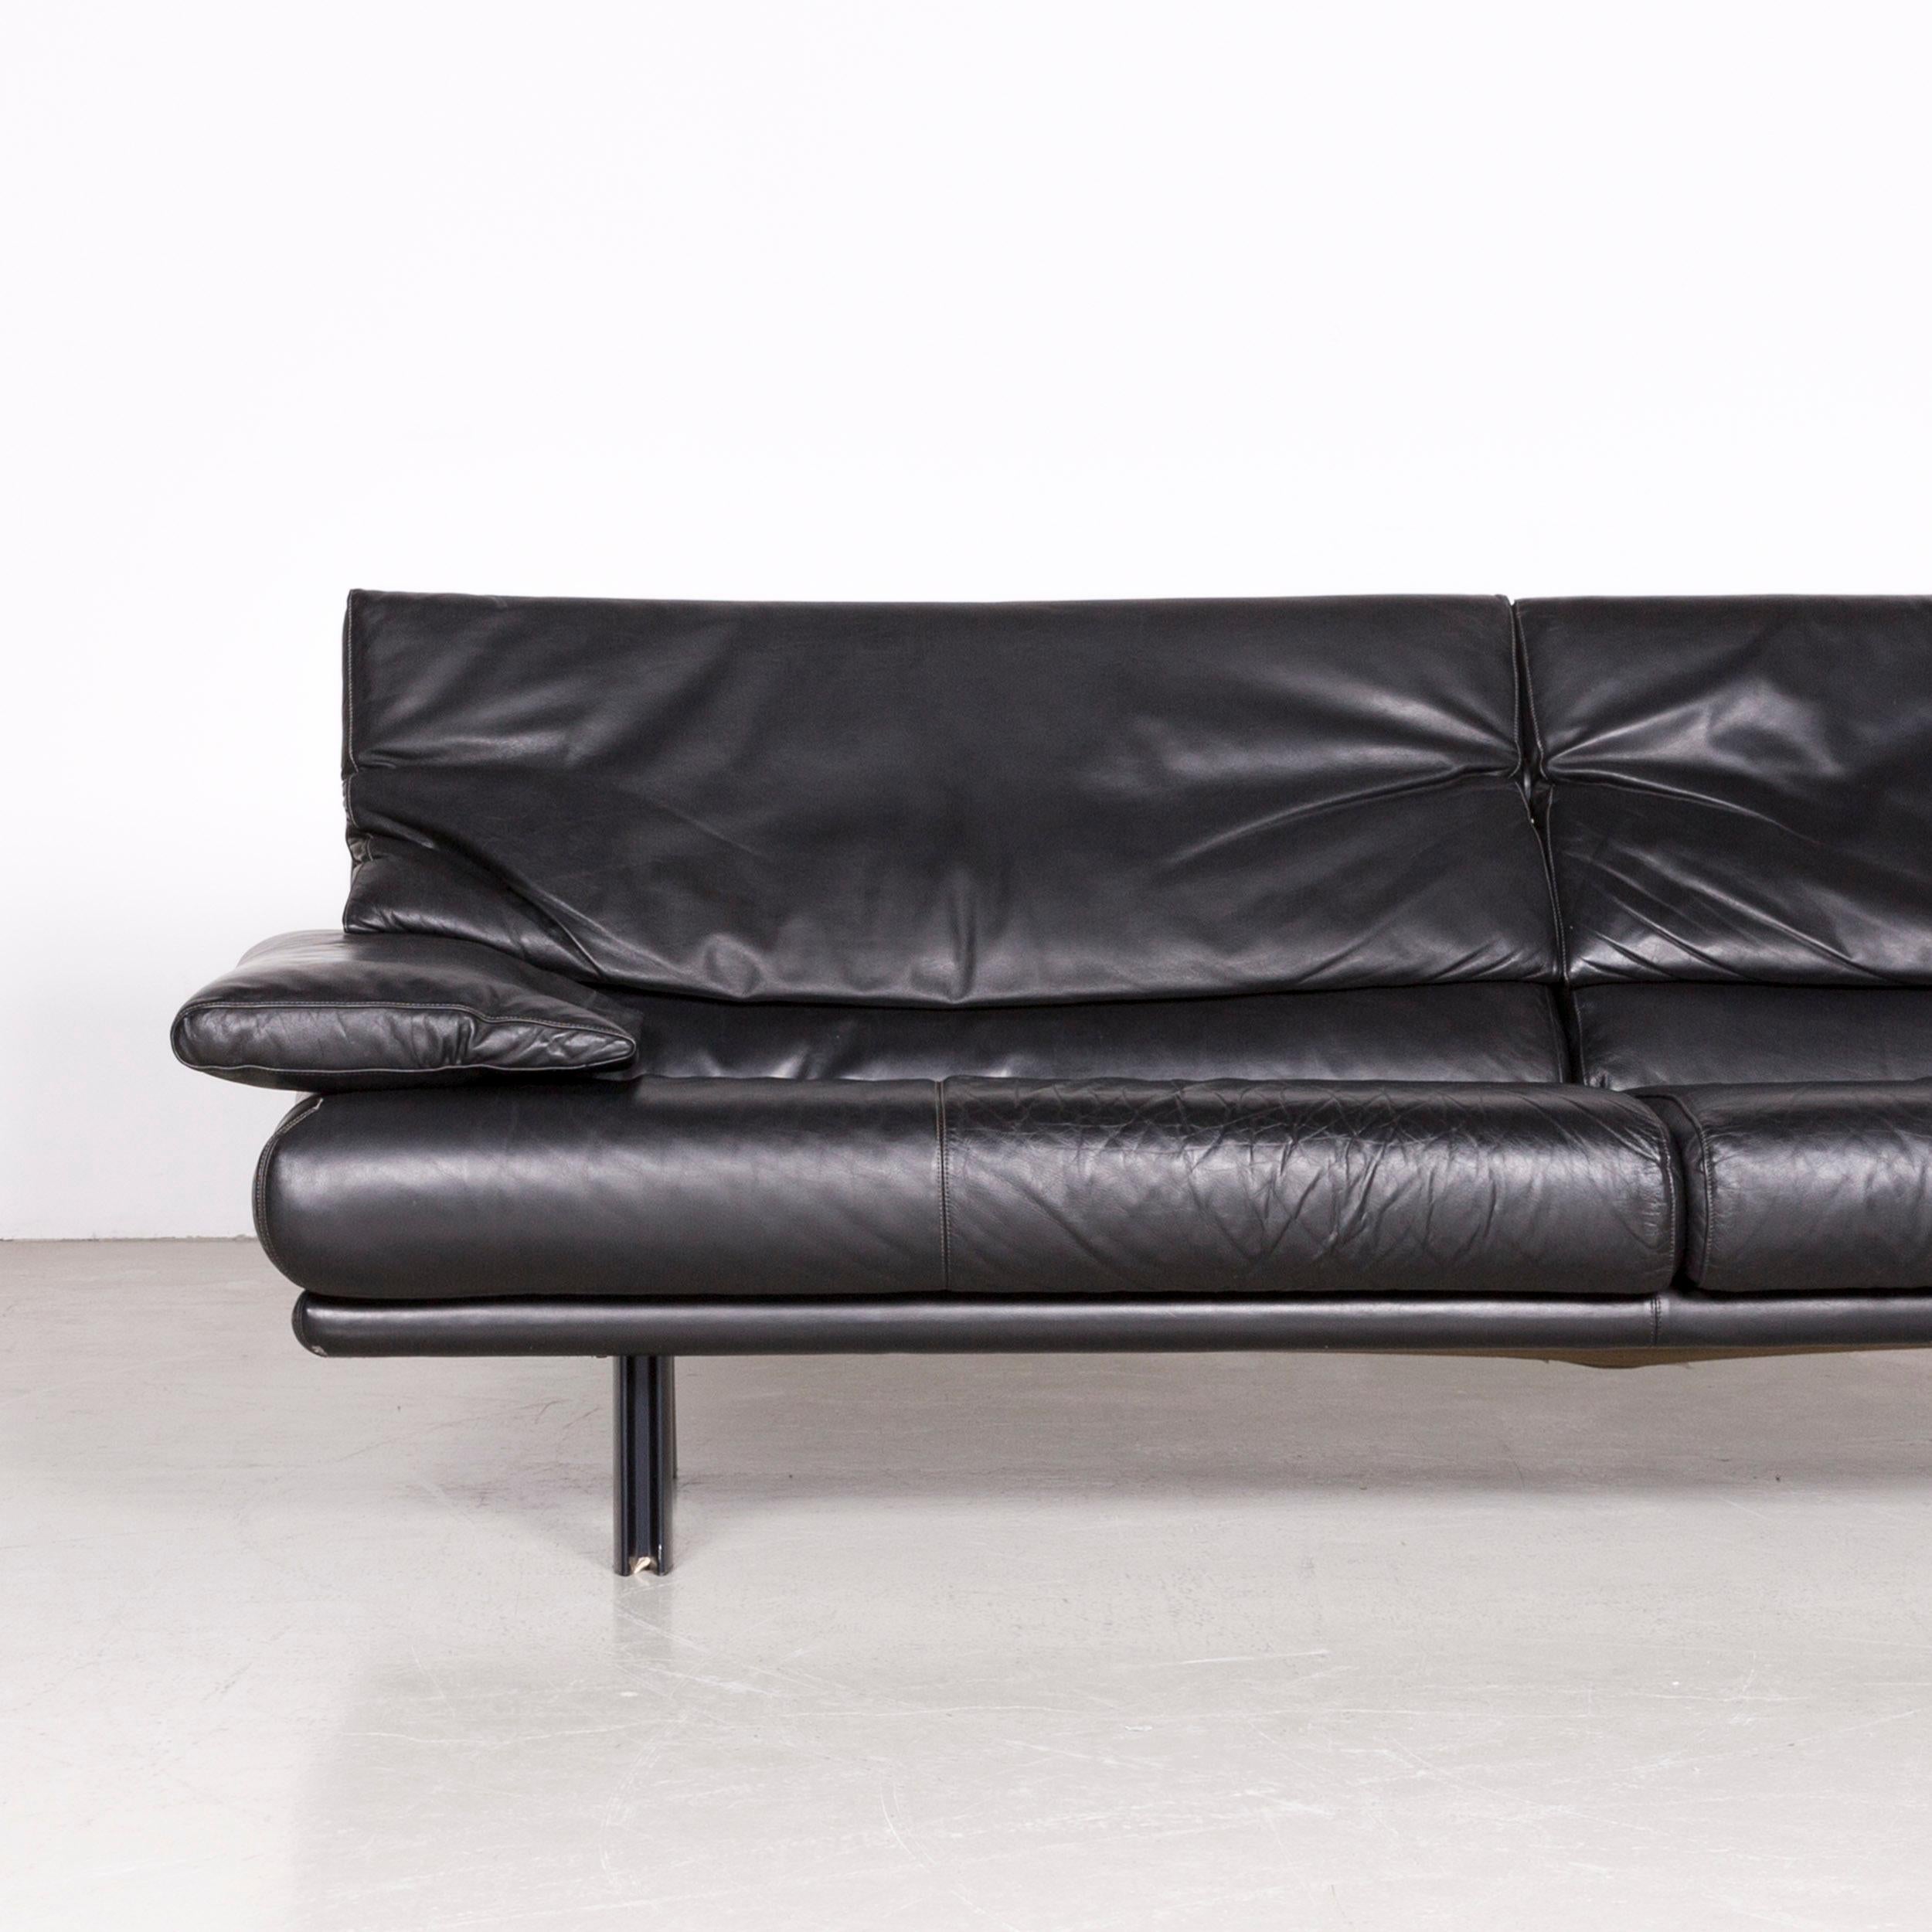 B&B Italia Alanda Designer Leather Sofa Black Three-Seat Couch Relax In Good Condition For Sale In Cologne, DE